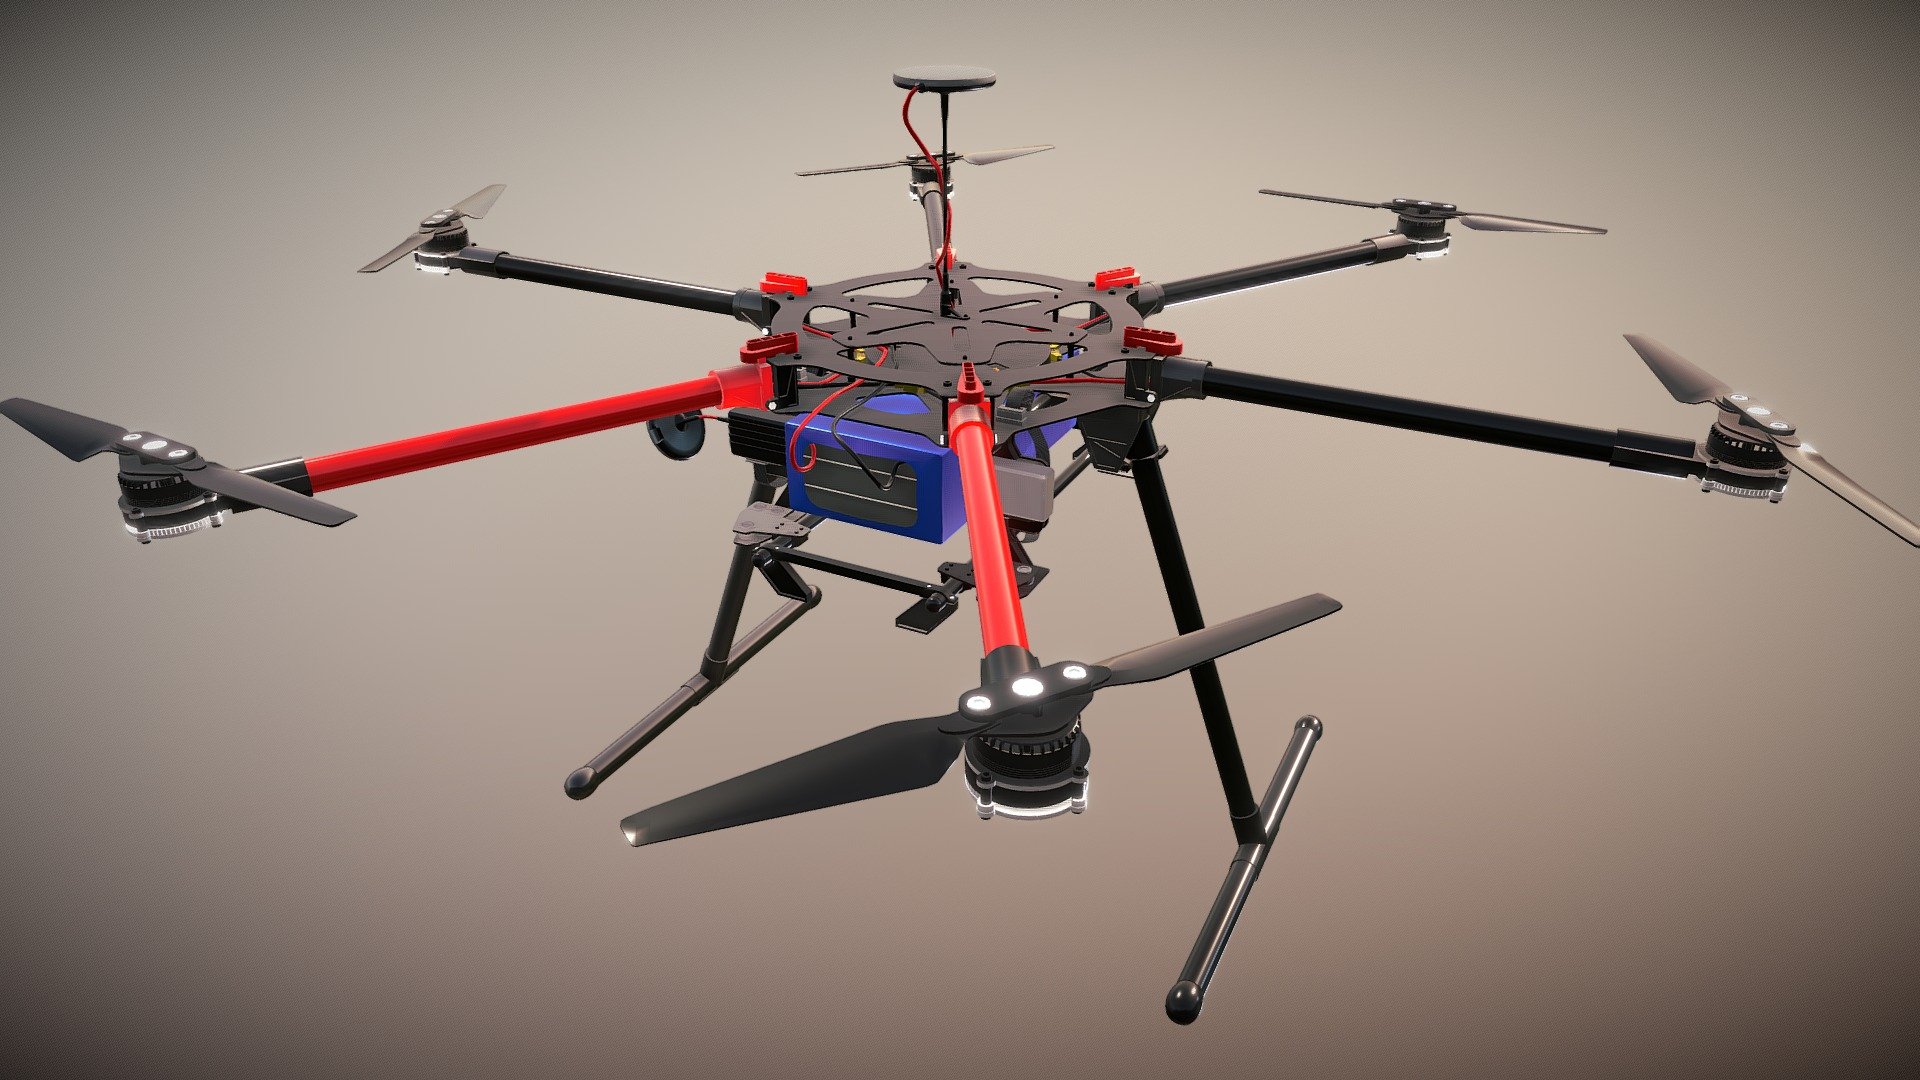 DJI s900 3d model - DJI S900 drone animated - 3D model by unlim3d 3d model